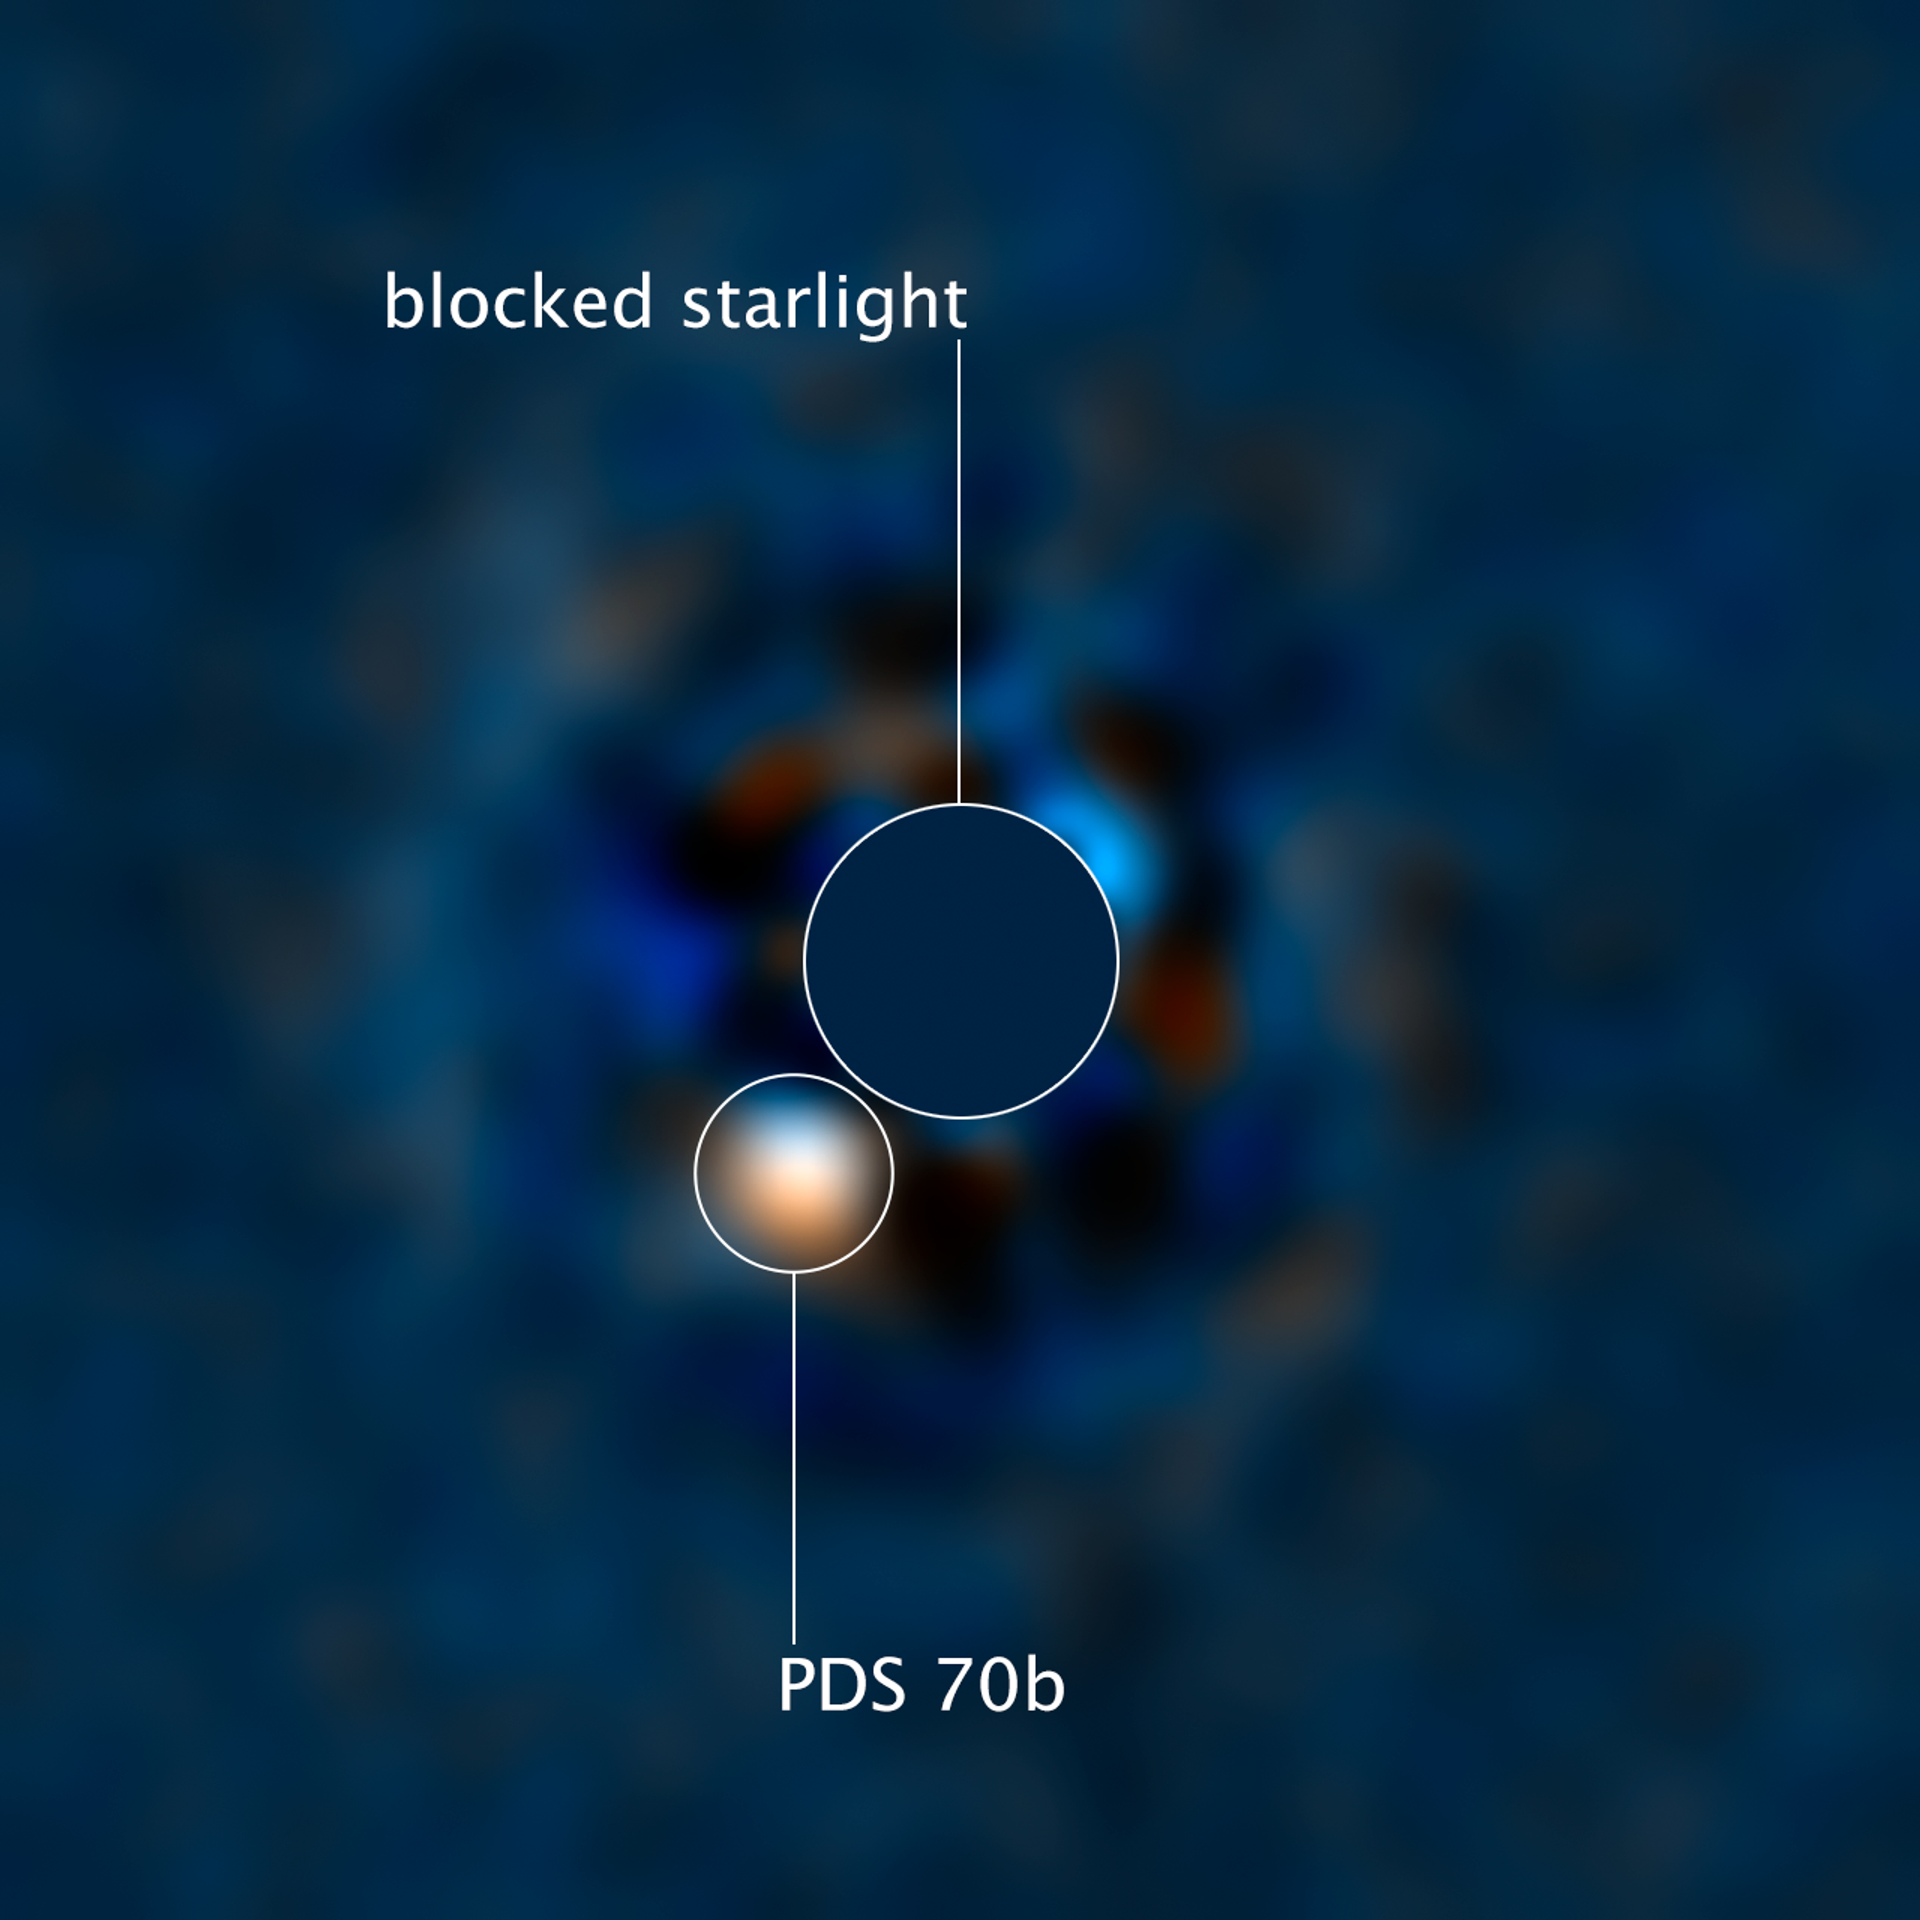 La imagen del exoplaneta PDS 70и captada por Hubble - Sputnik Mundo, 1920, 03.05.2021